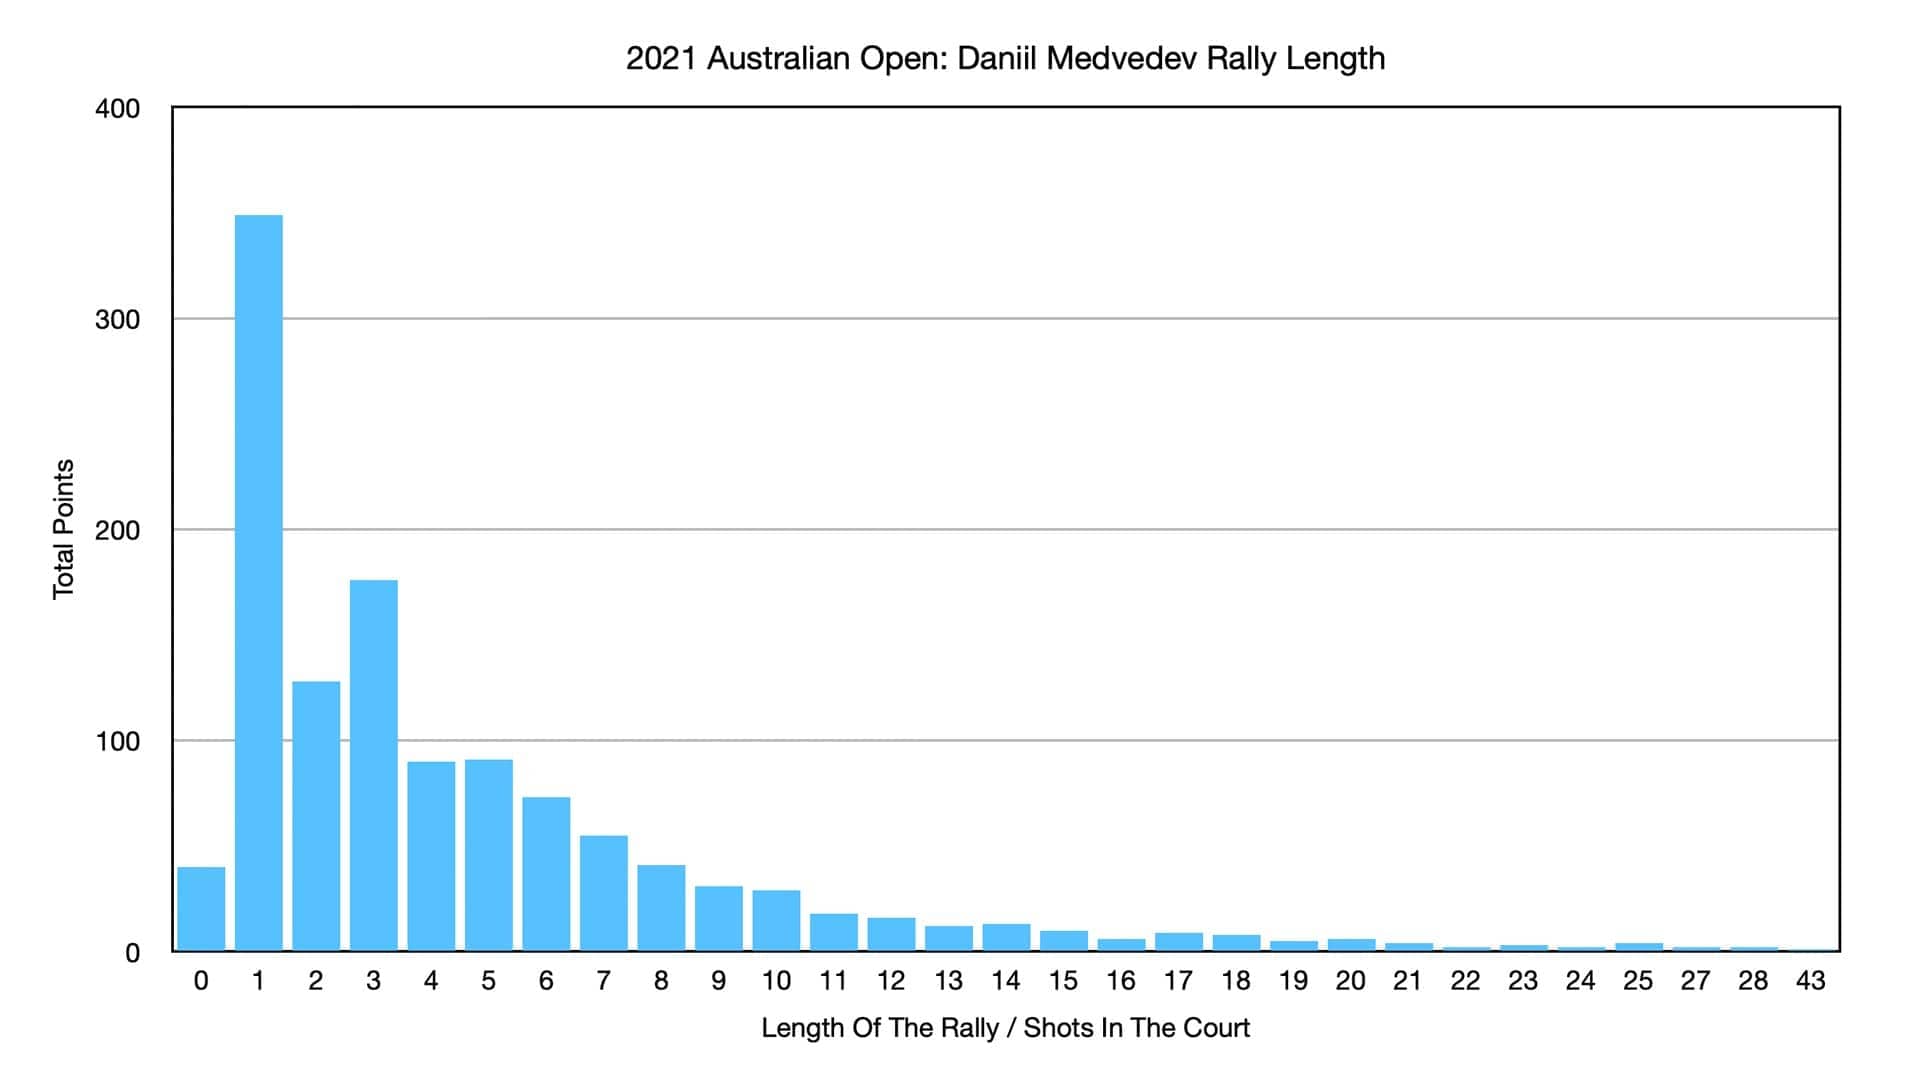 Medvedev Rally Length 2021 Australian Open